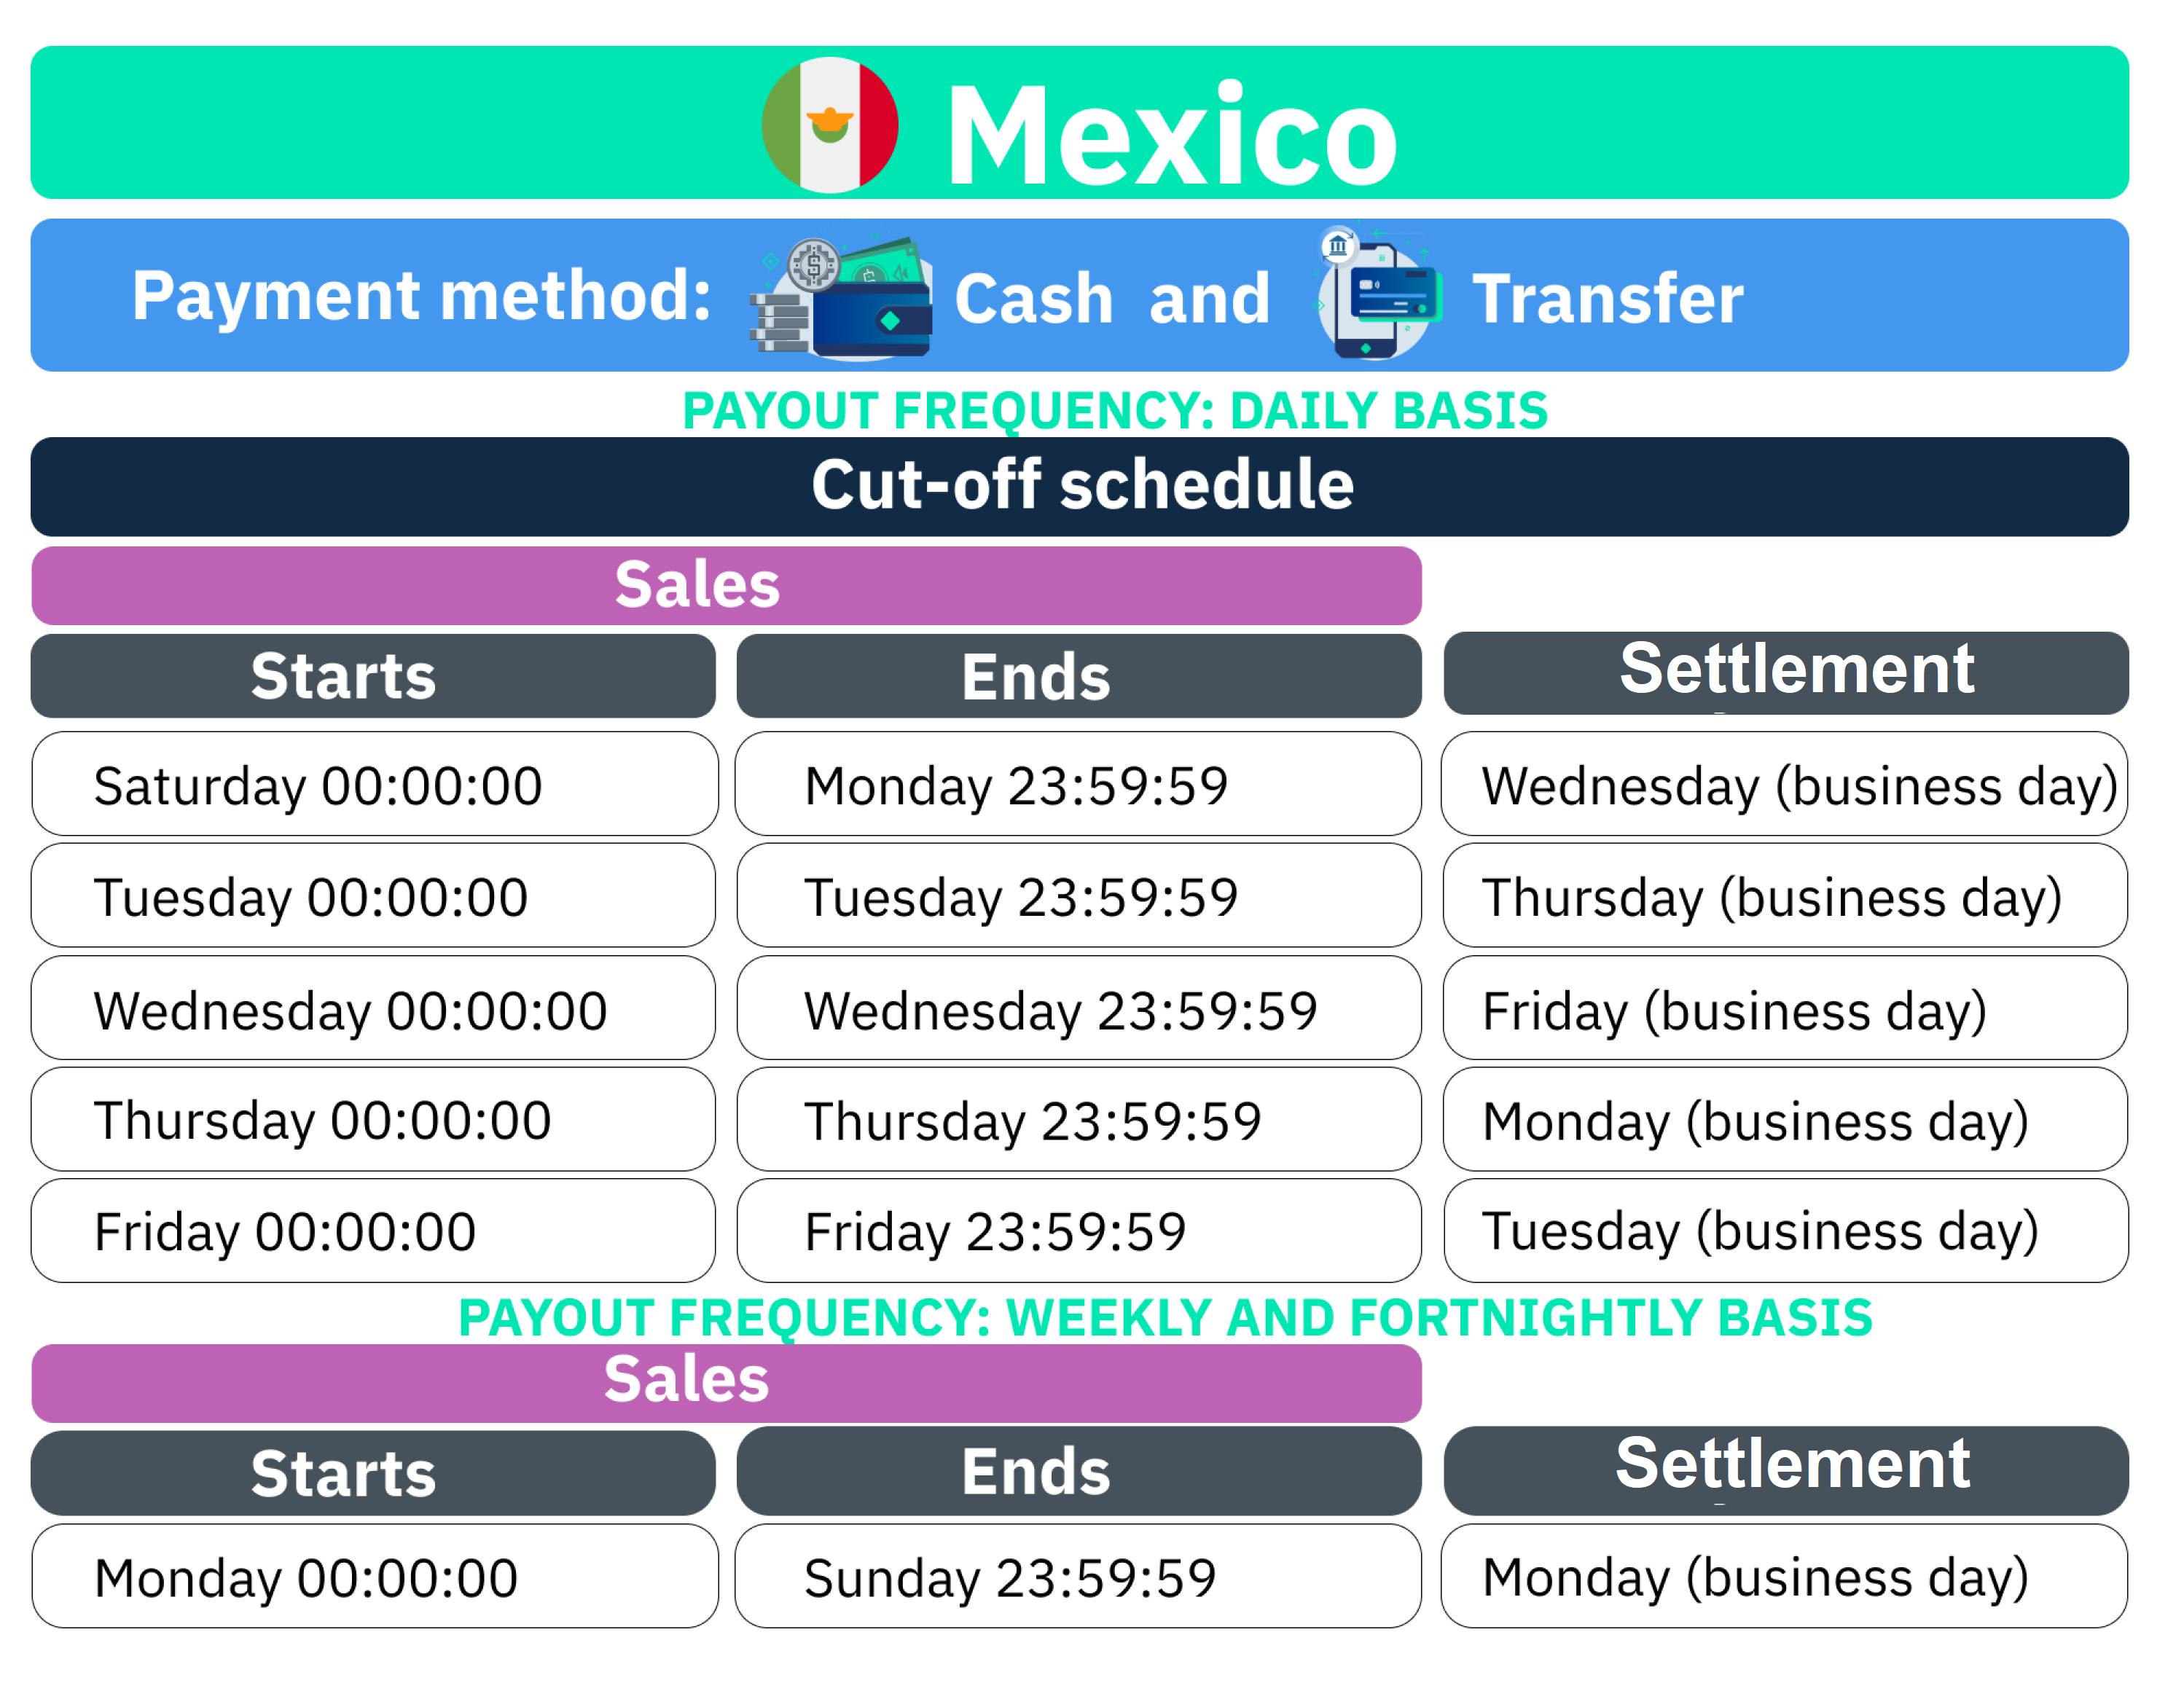 Correcciones Centro de Soporte liquidación-Mexico-Cash y transfer-final.png